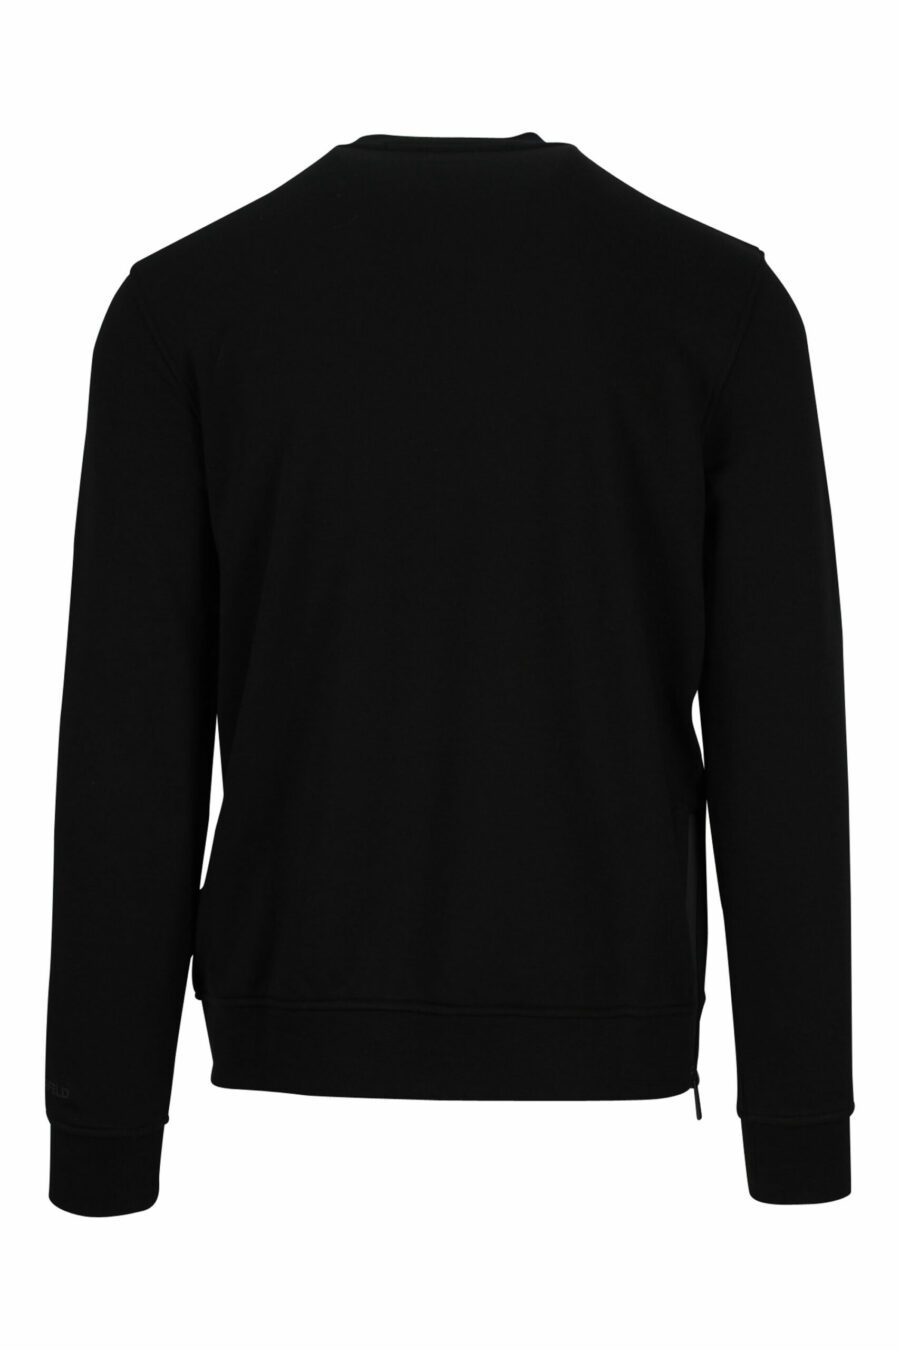 Schwarzes Sweatshirt mit mehrfarbigem "karl silhouette" Maxilogo - 4062226392938 1 skaliert